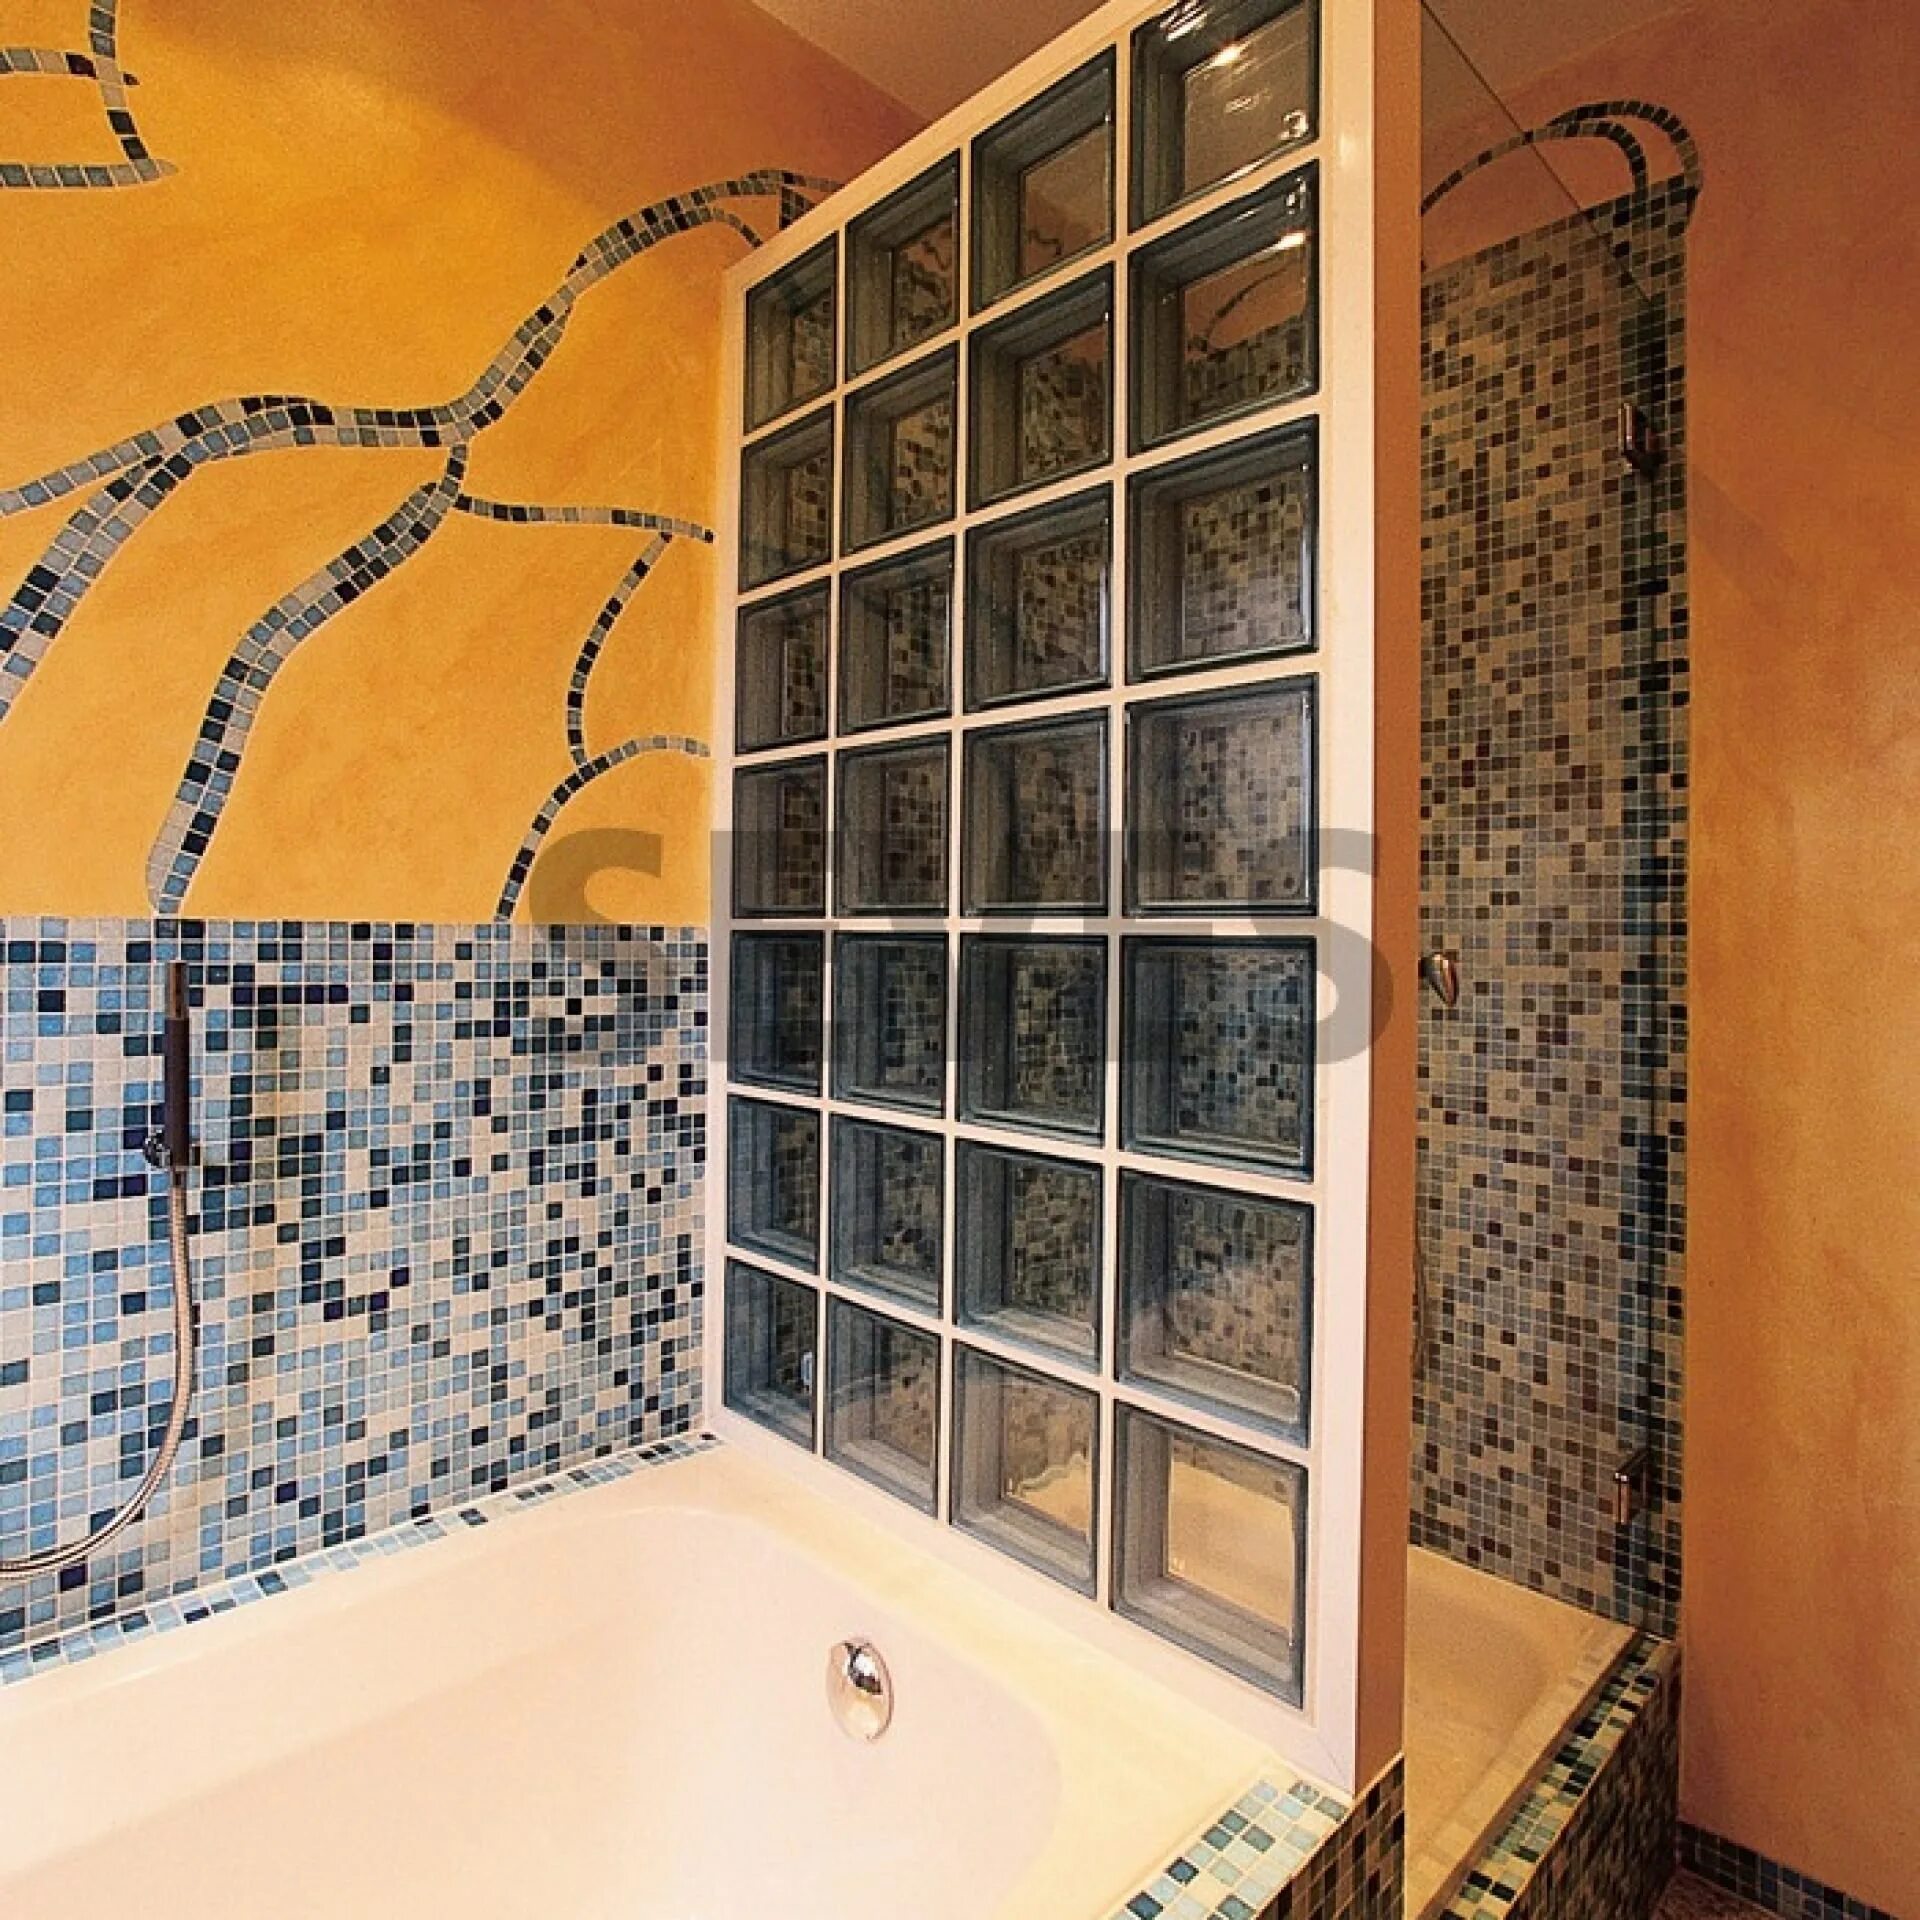 Теплые стены в душе. Стеклоблоки в интерьере ванной. Стена из стеклоблоков в ванной. Стеклянные блоки для перегородок в ванной. Ванная комната со стеклоблоками.